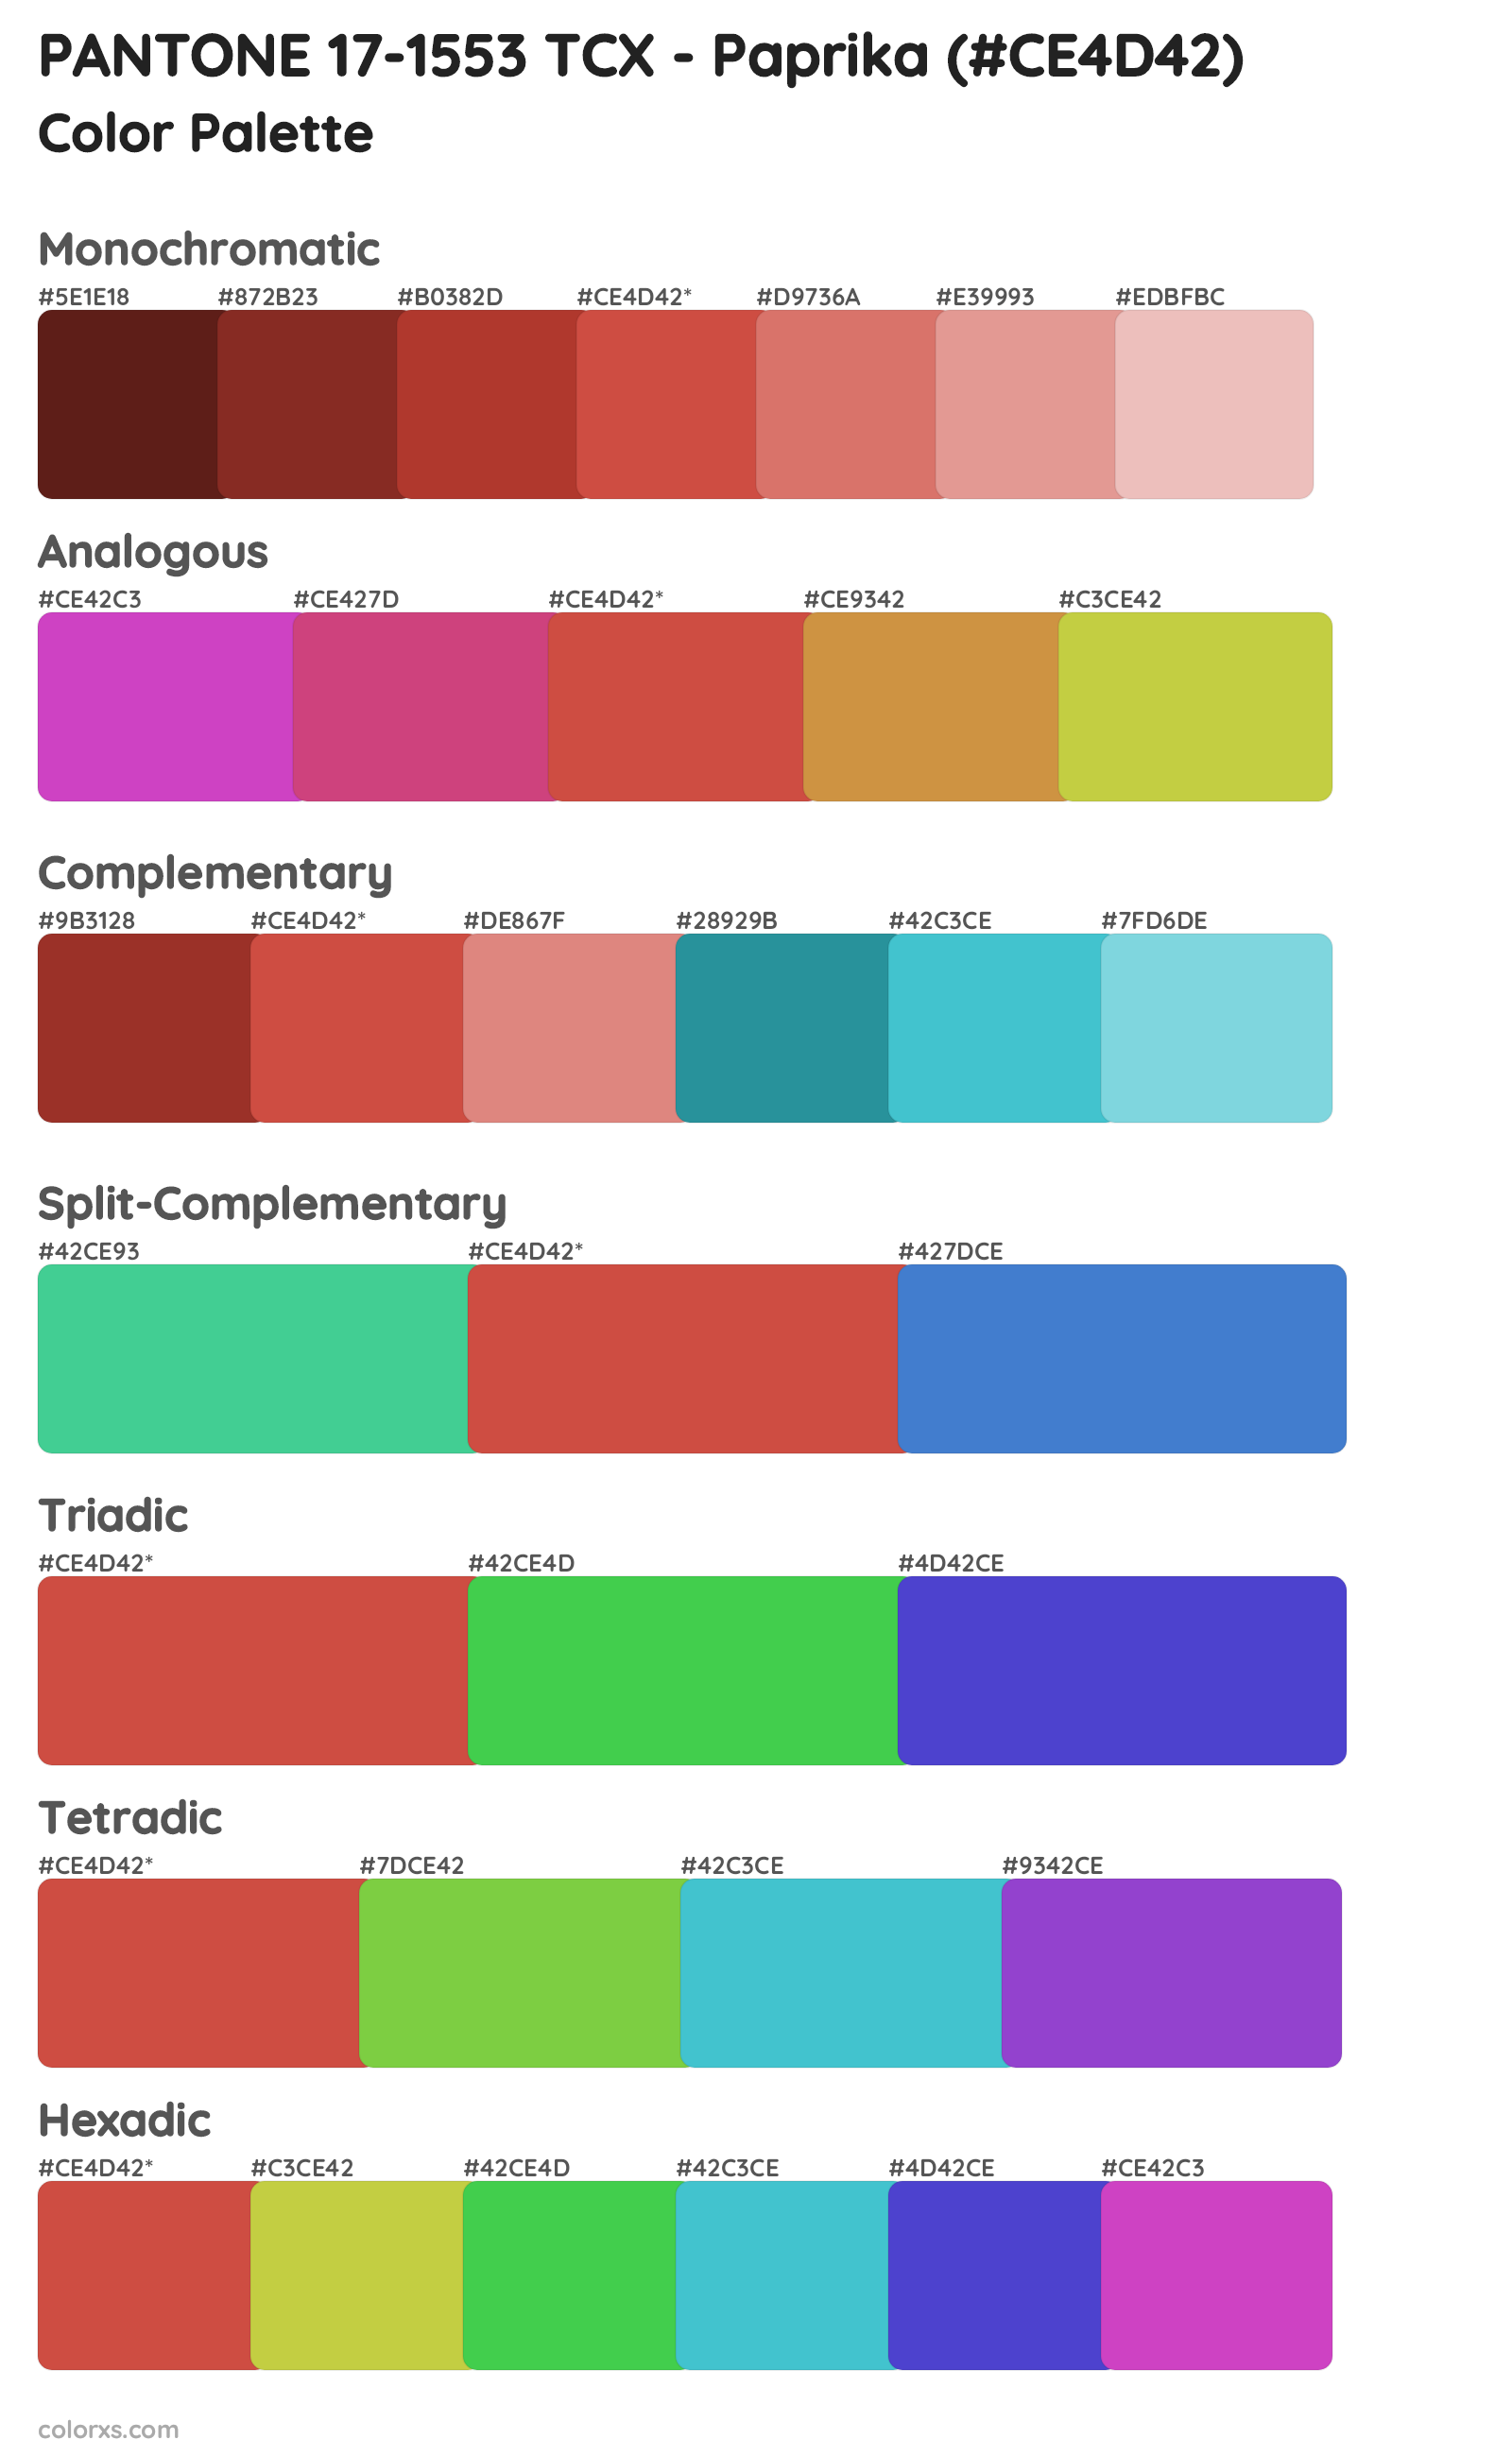 PANTONE 17-1553 TCX - Paprika Color Scheme Palettes